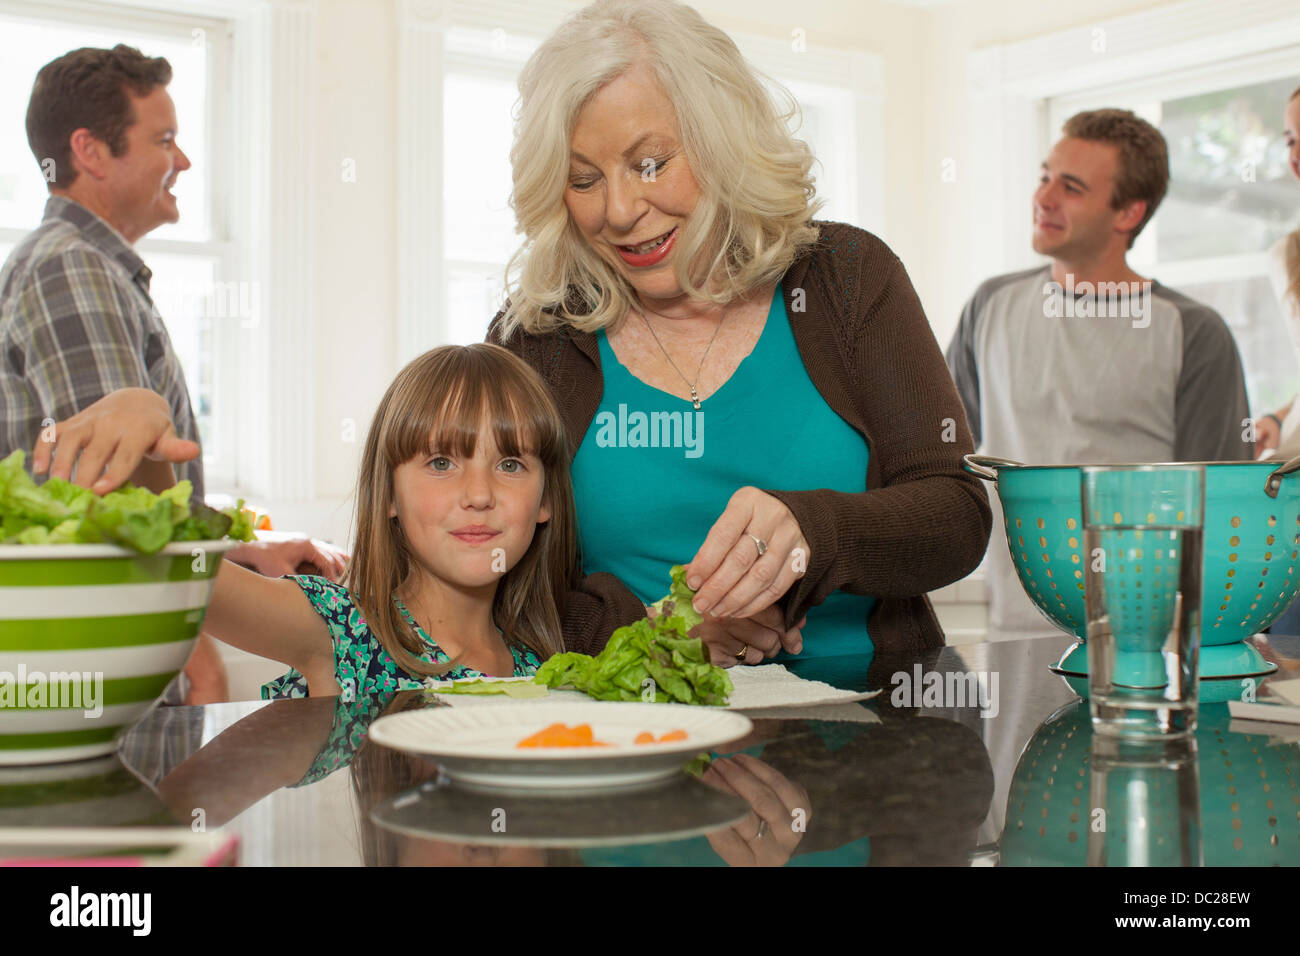 Petite-fille et grand-mère preparing salad Banque D'Images